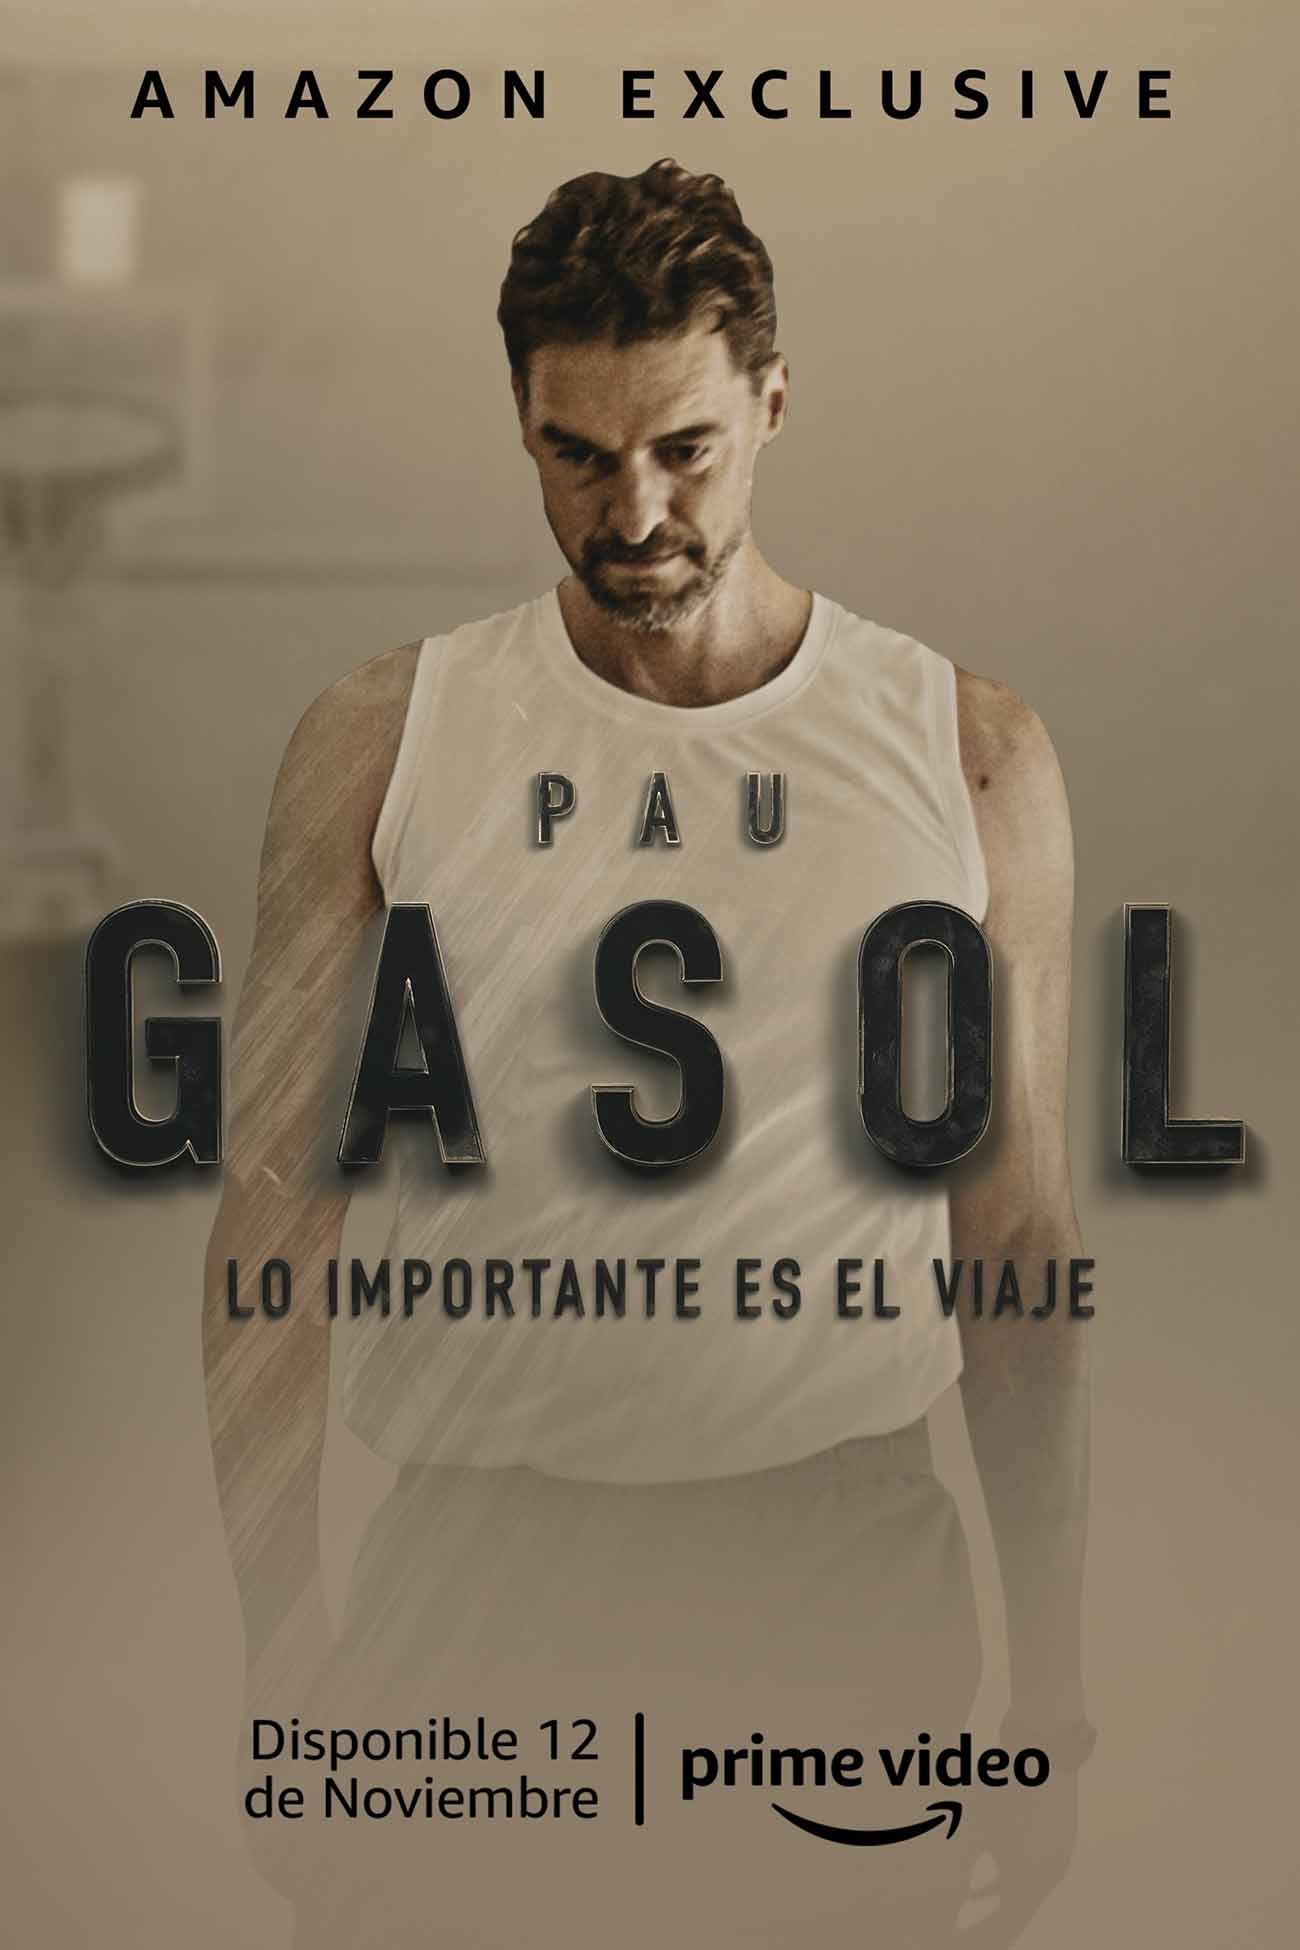 El ex jugador de baloncesto Pau Gasol estrena el documental Lo importante es el camino en Prime Video de Amazon